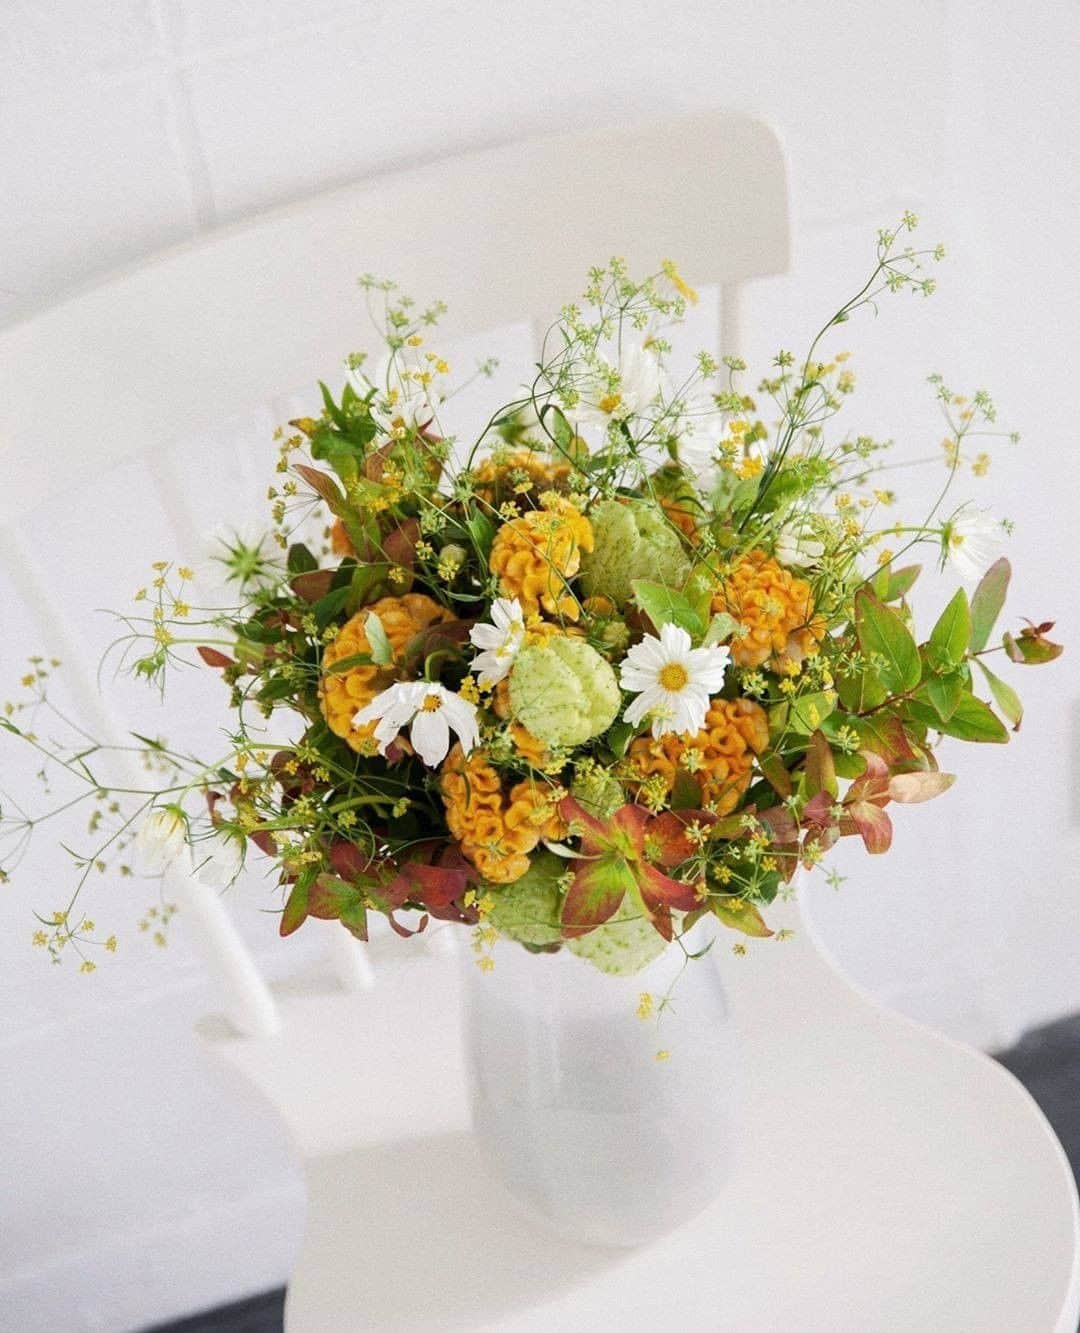 ベネフィーク【公式】のインスタグラム：「部屋に飾る花も、自分らしくコーディネート。⠀ ⠀ 季節の花で彩りをプラスして。⠀ ⠀ Photo by @kolme_tokyo さん⠀ ⠀ ⠀ #benefique #ベネフィーク #資生堂 #shiseido #花のある暮らし #季節の花 #花のある生活 #花のあるくらし #花好き #はなすたぐらむ #花が好き #秋の花 #季節の花 #花を愛でる #丁寧な暮らし #花を飾る #お花が好き #暮らしのキロク #日々のこと #好きなものに囲まれた暮らし #日々を大切に #おうち時間 #ていねいな暮らし #暮らしを楽しむ #日々の暮らしを楽しむ #季節を楽しむ #暮らしを愉しむ #日々の暮らし #くらしを楽しむ #季節を感じる⠀」